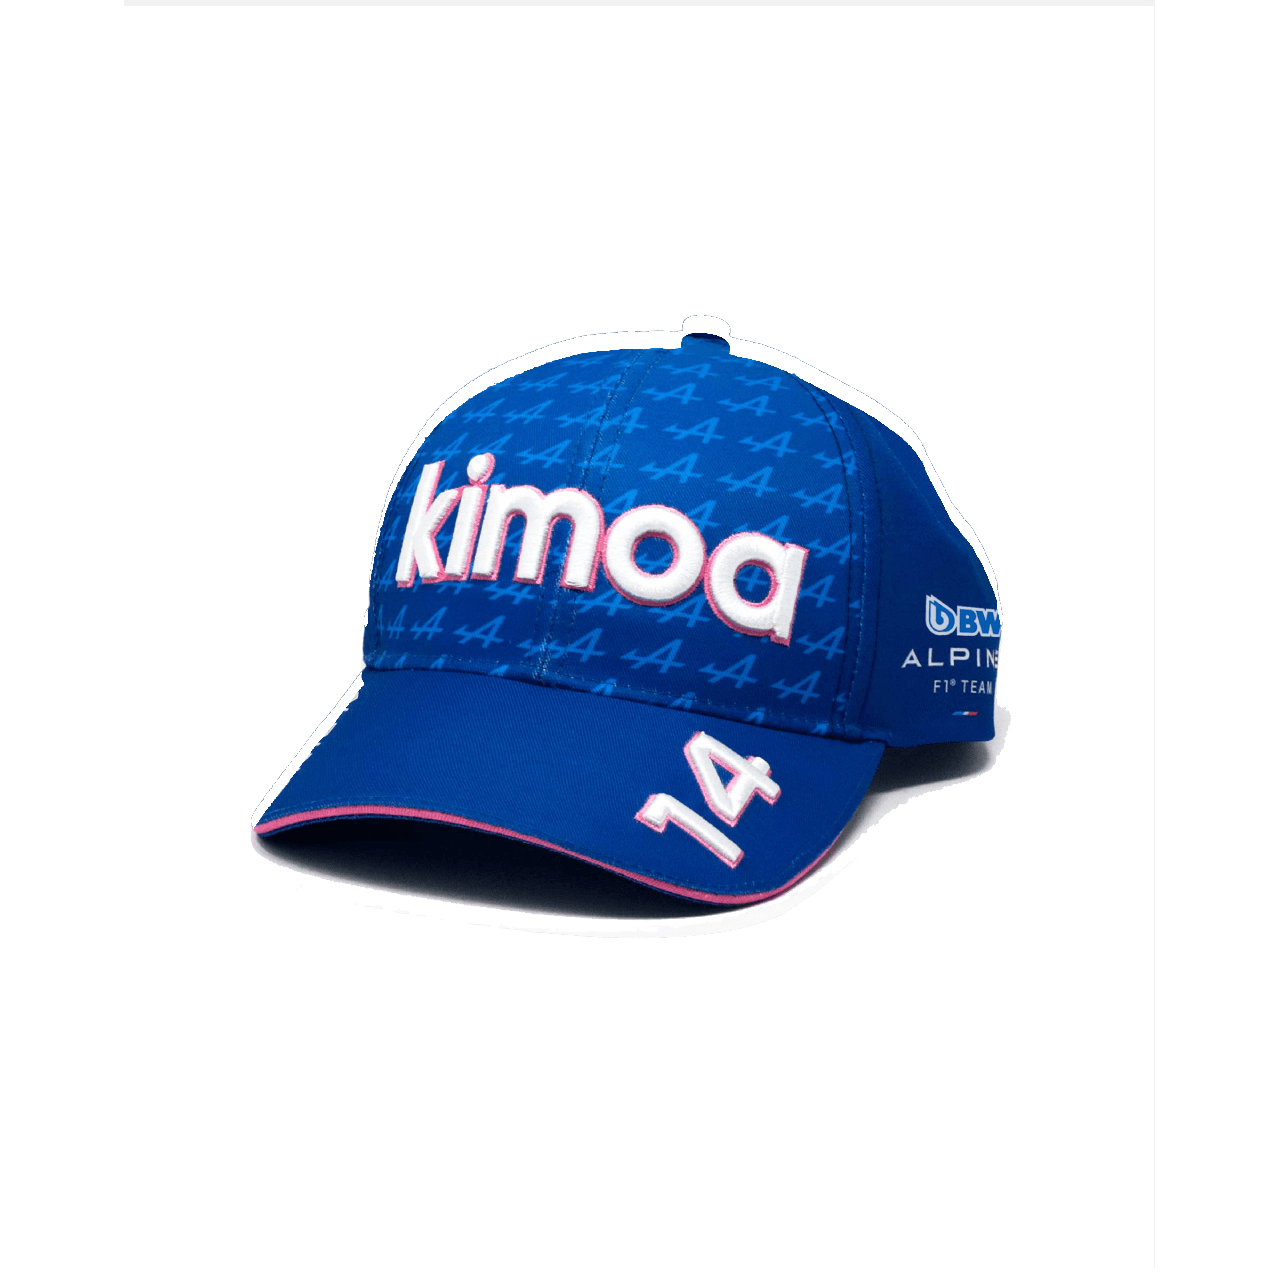 Kimoa BWT ALPINE F1 Snappack Cap blu con elementi bianchi e rosa